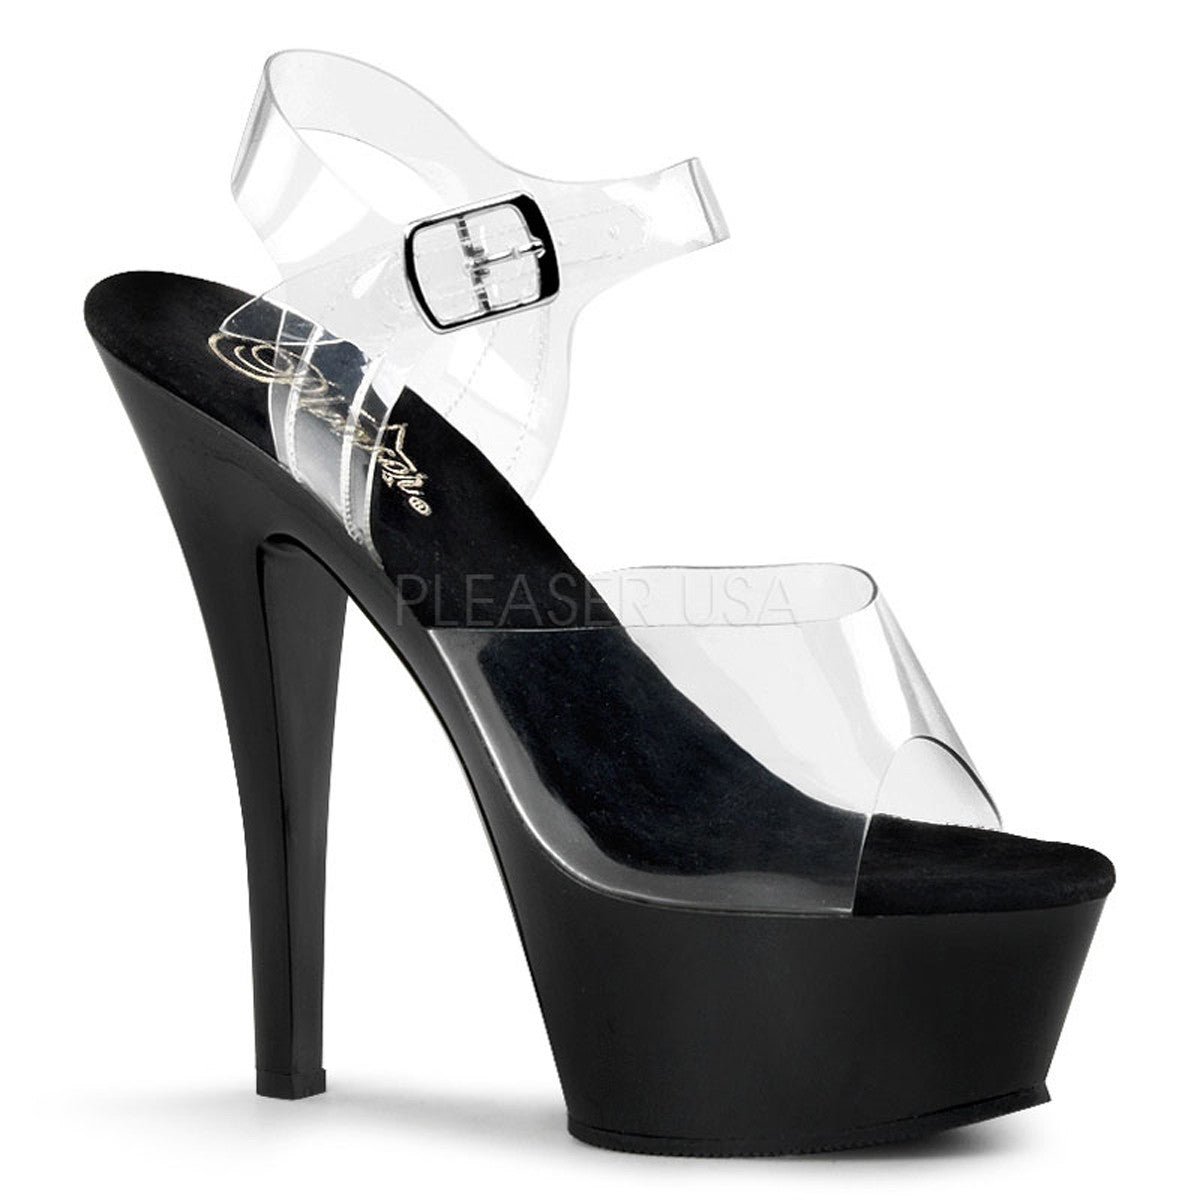 PLEASER KISS-208 Clear-Black Platform Sandals - Shoecup.com - 1